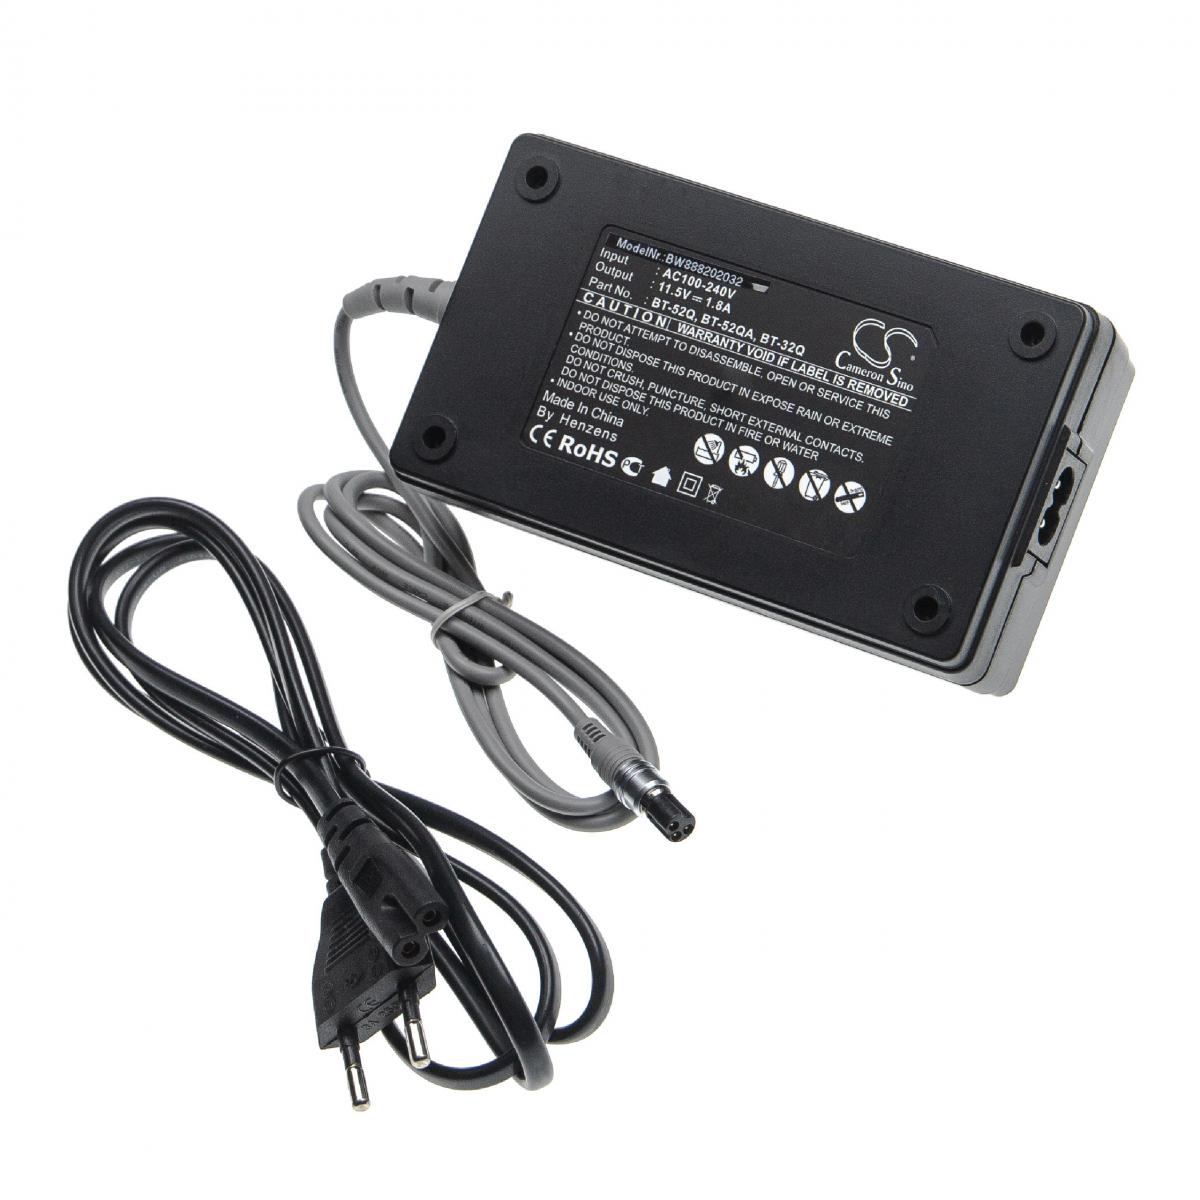 Vhbw - vhbw Chargeur compatible Topcon CTS-3000, GPT-1000, GPT-1003, GPT-102R, GPT-2000, GPT-3000 appareil de mesure - Noir, plastique - Piles rechargeables